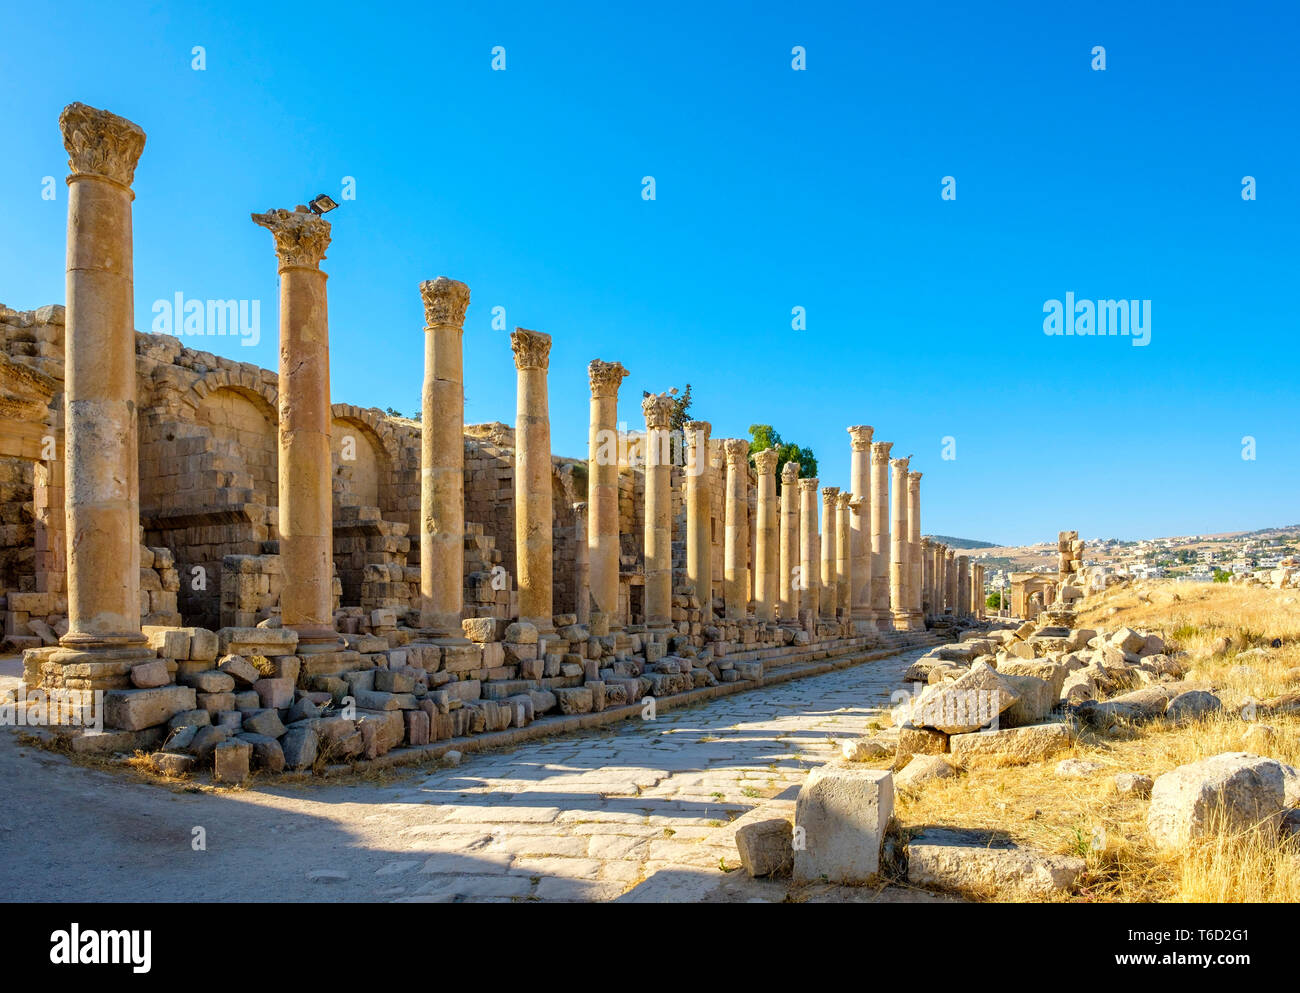 La Jordanie, le Gouvernorat de Jerash, Jerash. La rue à colonnade (cardo maximus) dans l'ancienne ville romaine de Gérasa. Banque D'Images